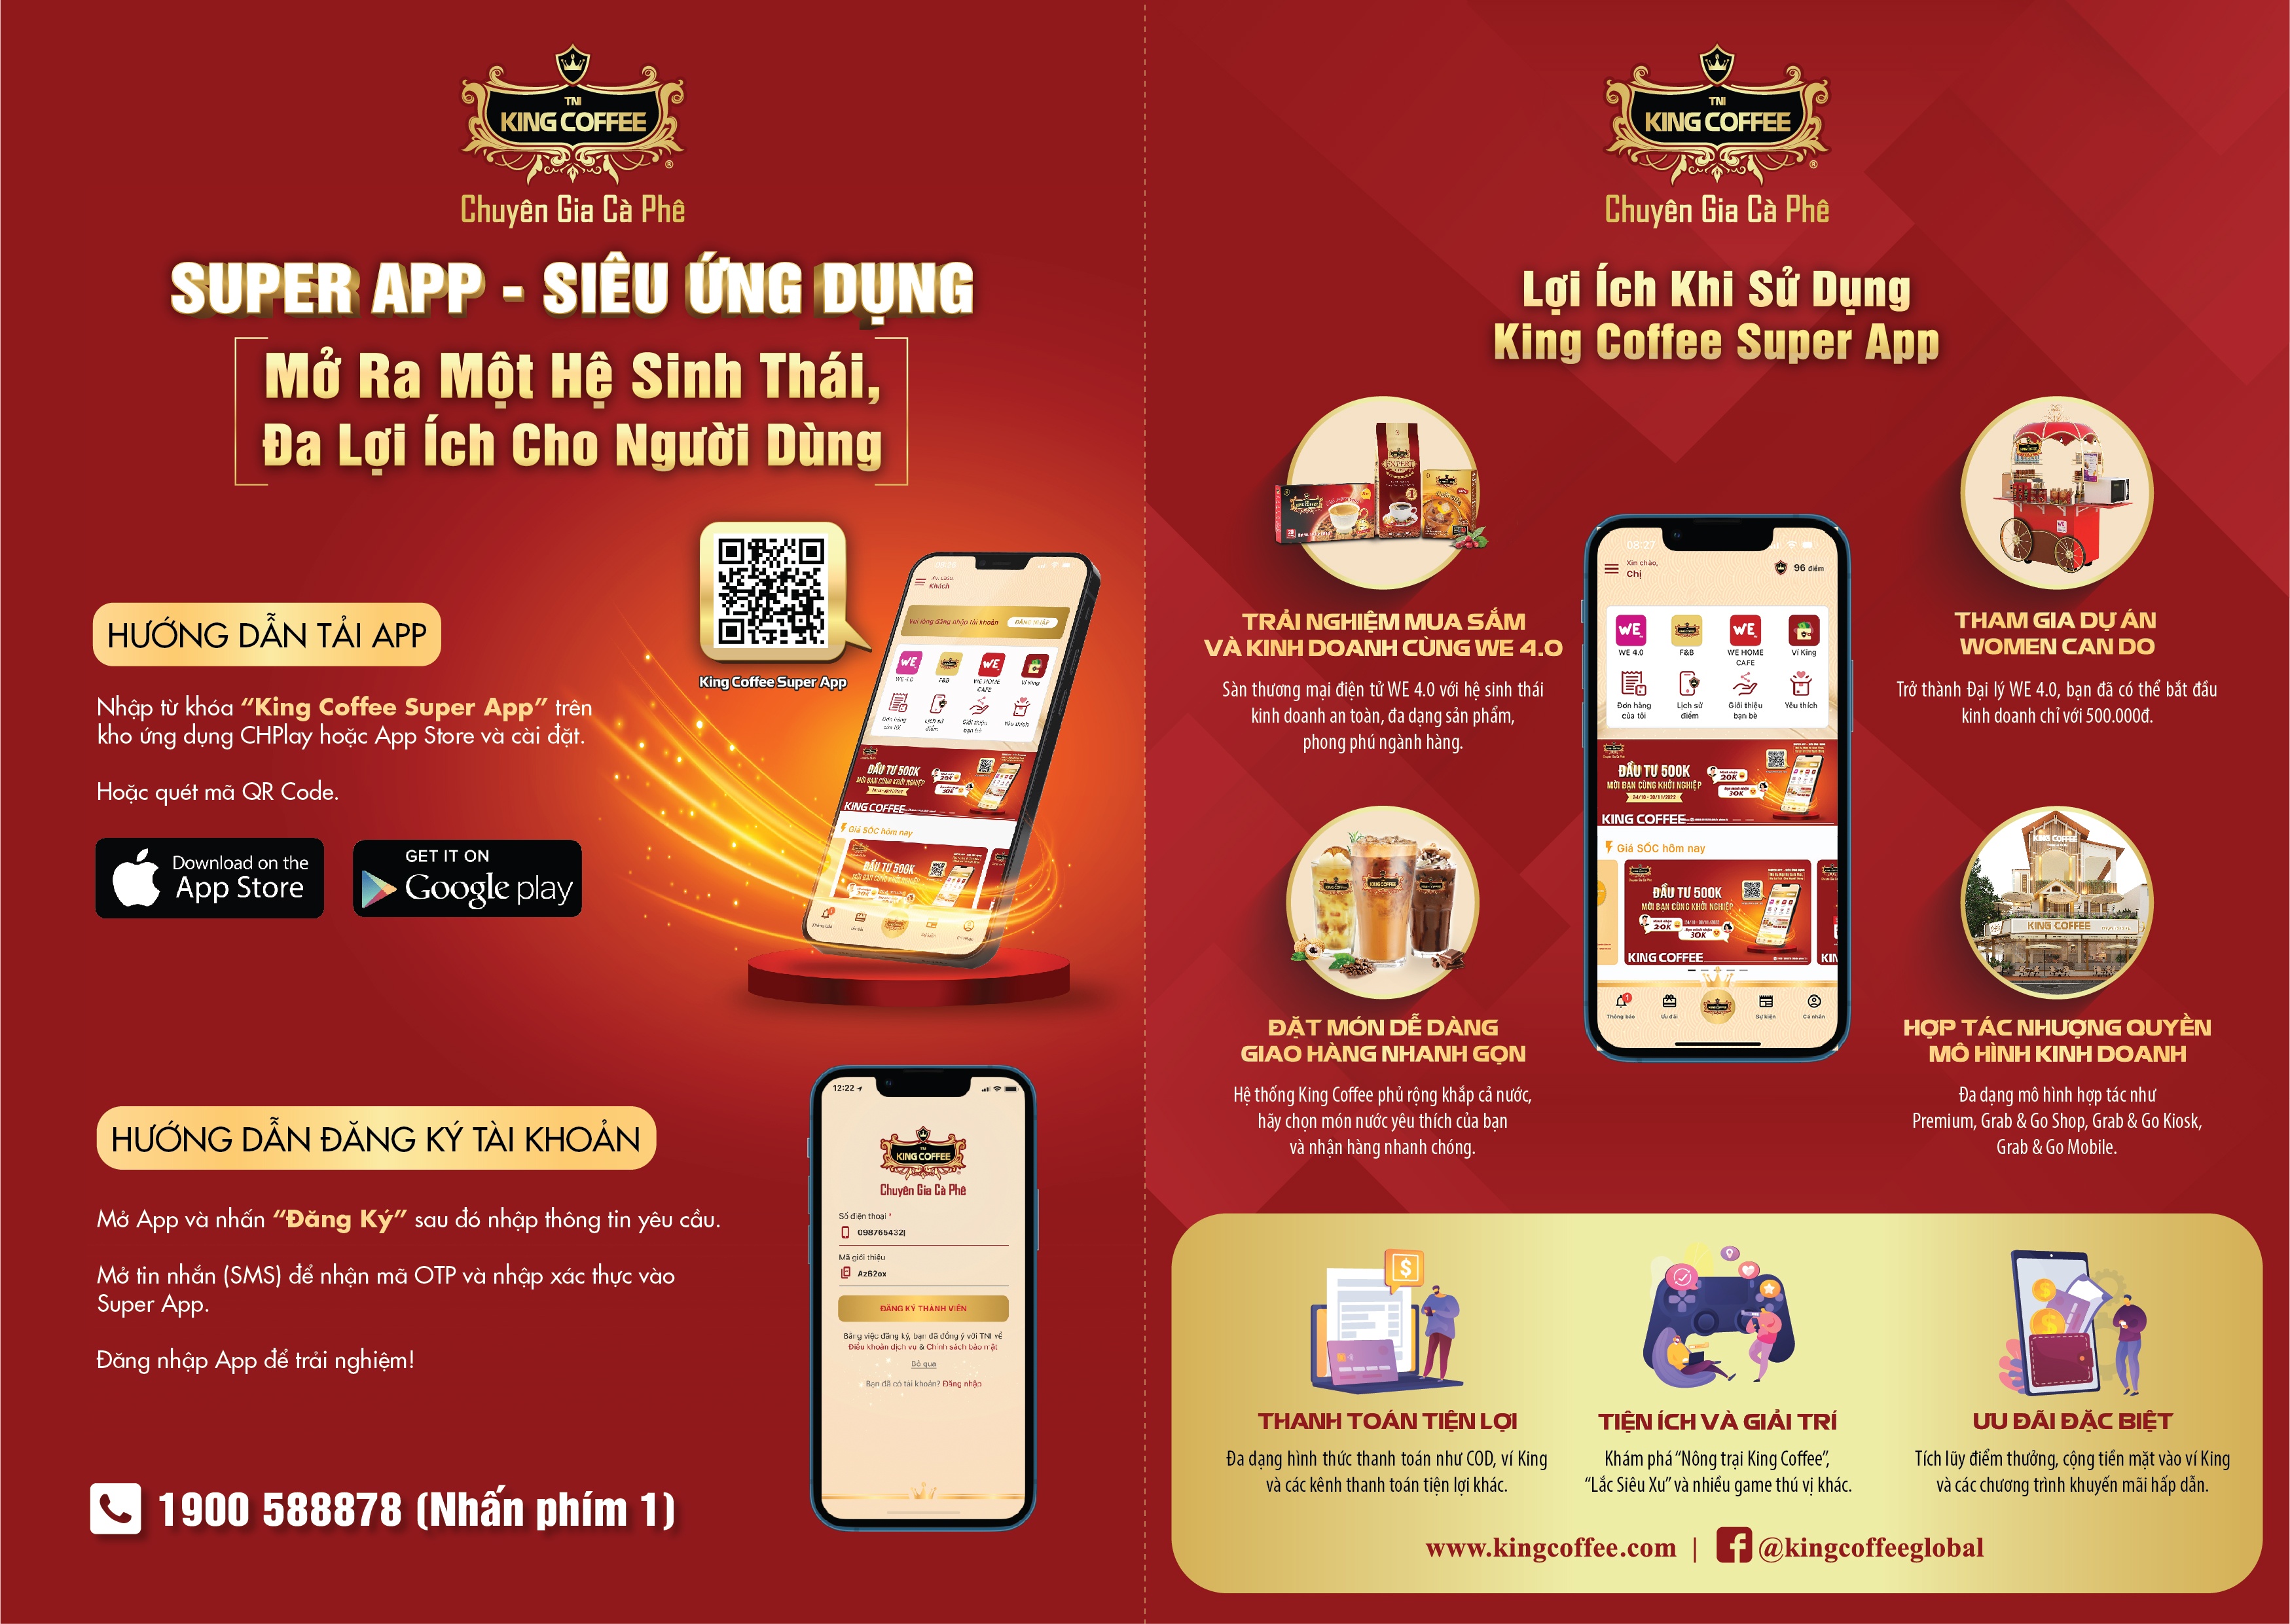 King Coffee Super App: Thương hiệu Việt - trí tuệ Việt